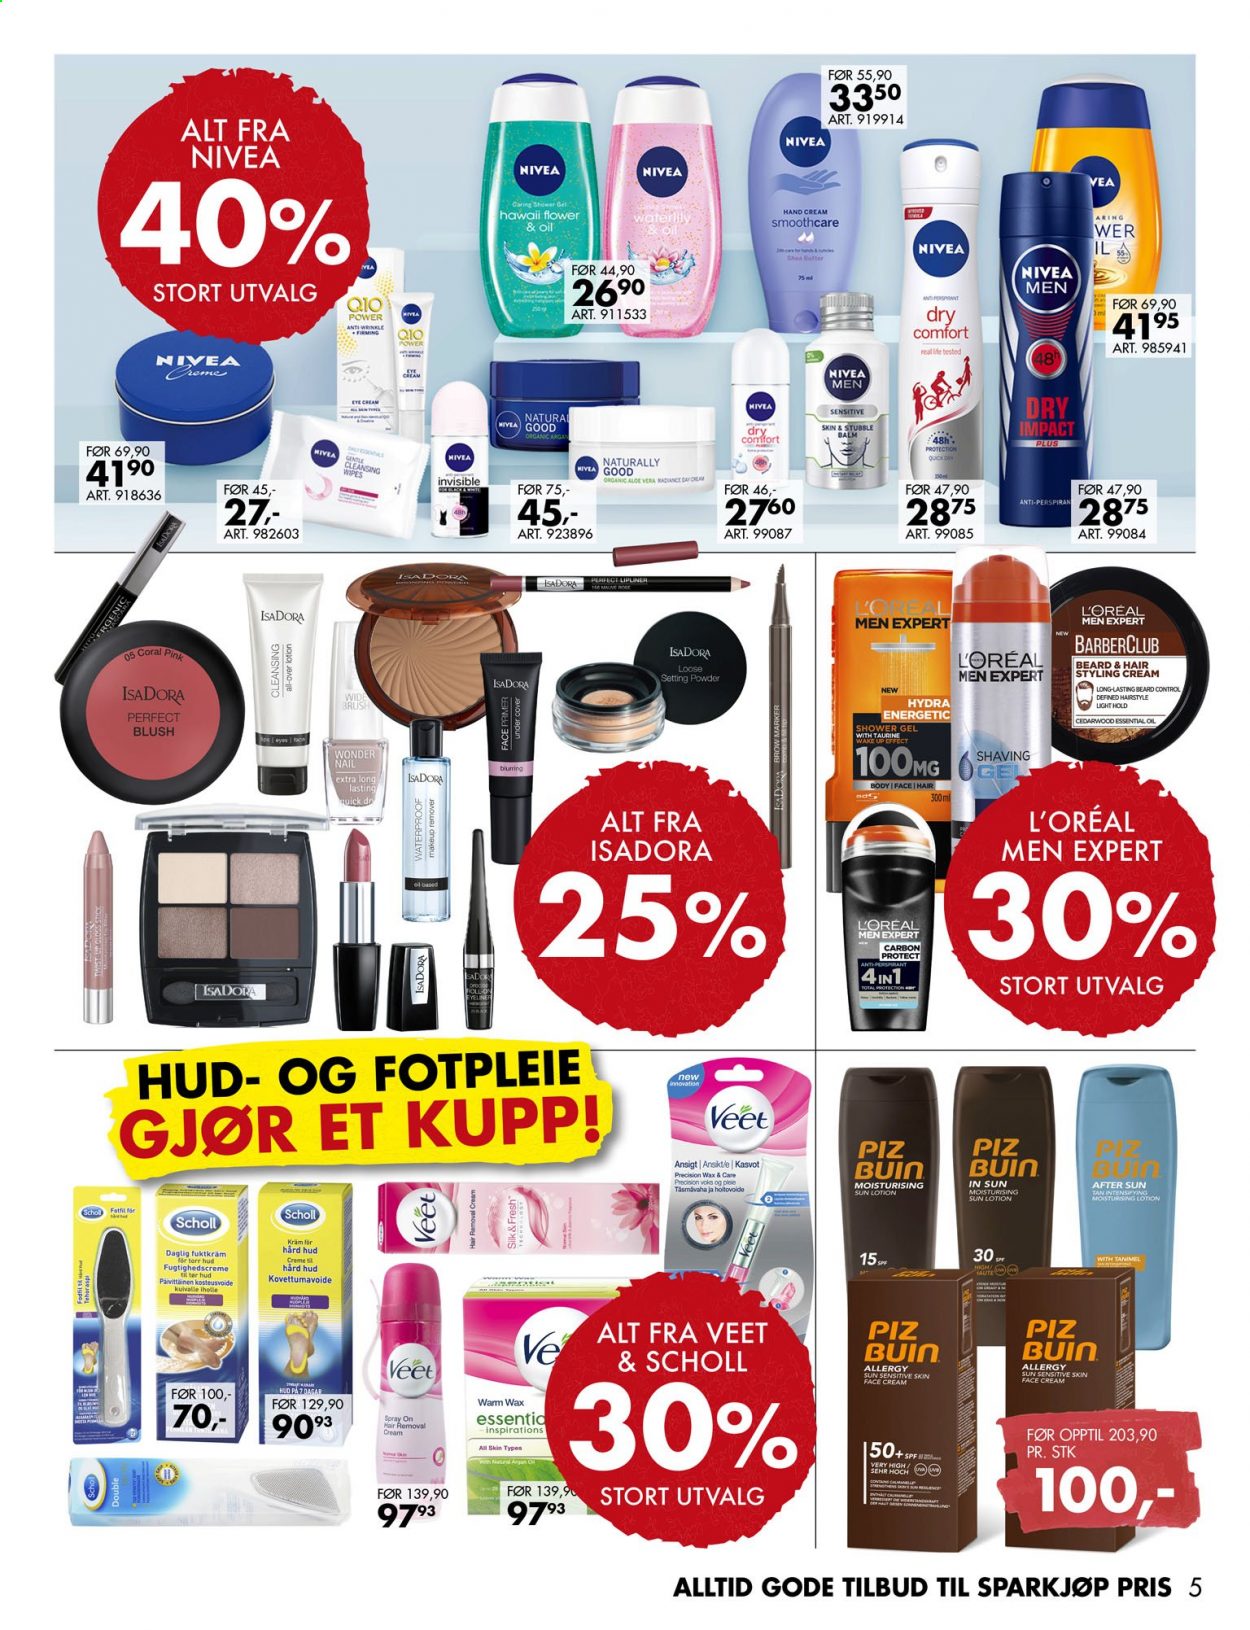 thumbnail - Kundeavis Sparkjøp - 19.7.2021 - 1.8.2021 - Produkter fra tilbudsaviser - hair removal, Nivea, L’Oréal, cleansing wipes, dusjsåpe, cream, håndkrem. Side 5.